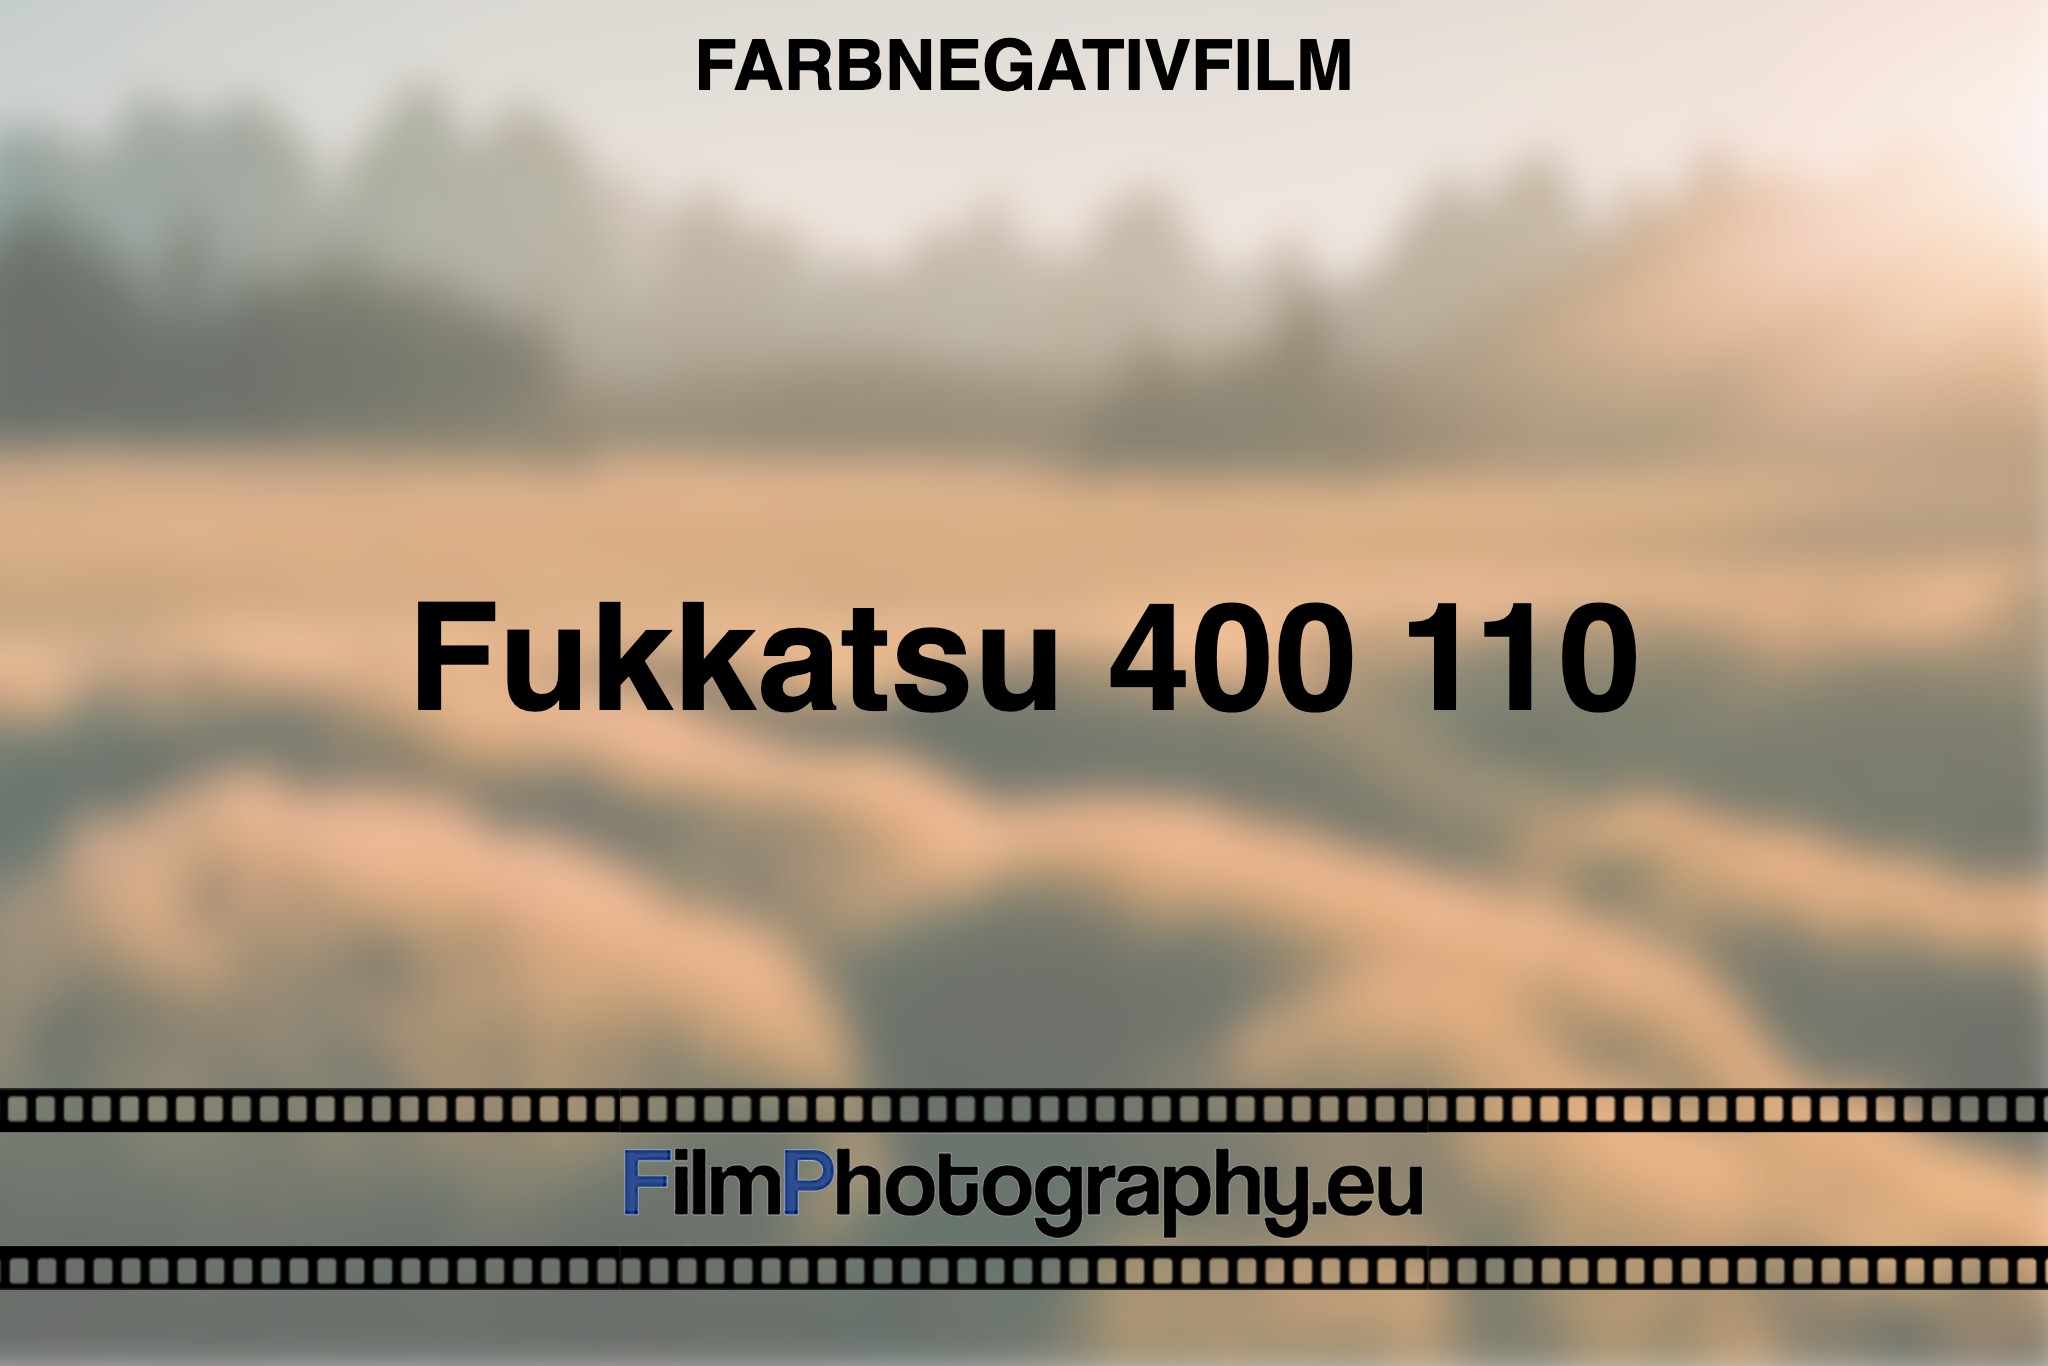 fukkatsu-400-110-farbnegativfilm-bnv